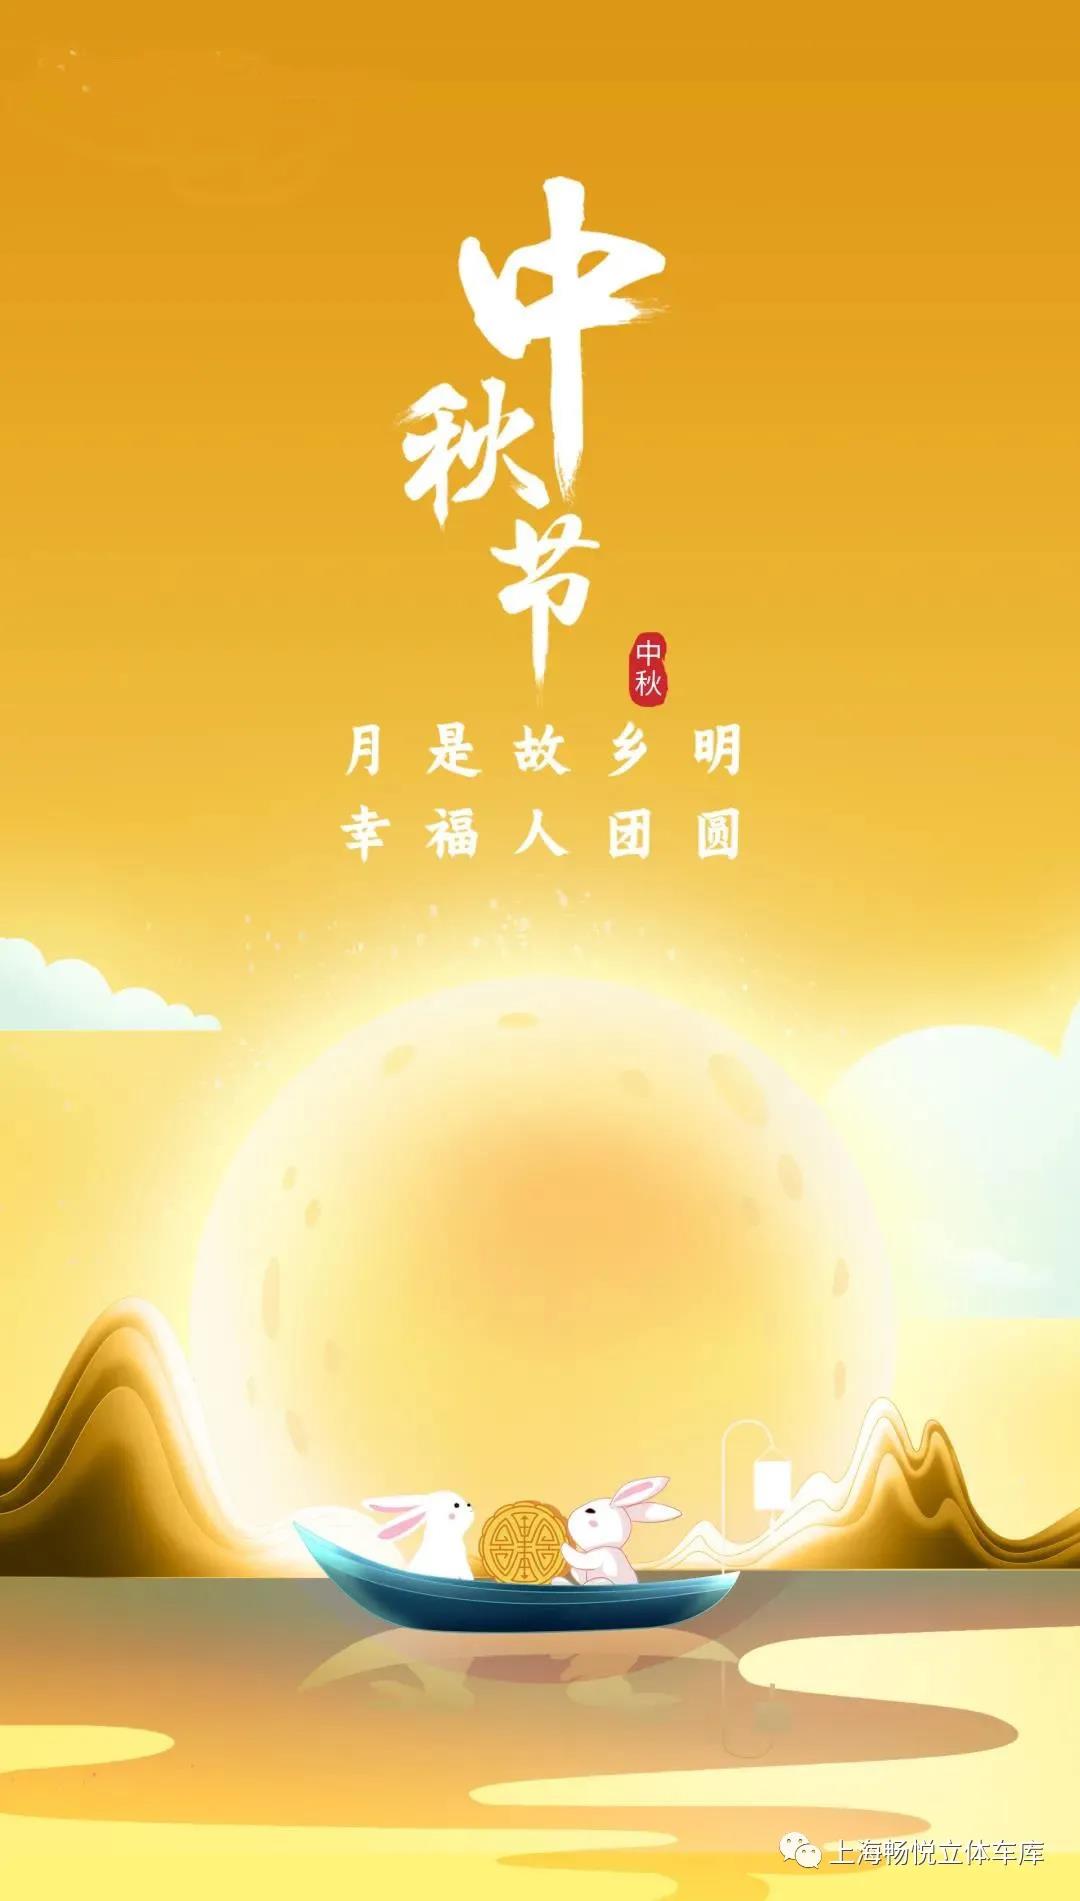 八月十五 | 上海美女福利视频网站祝朋友们佳节团圆！